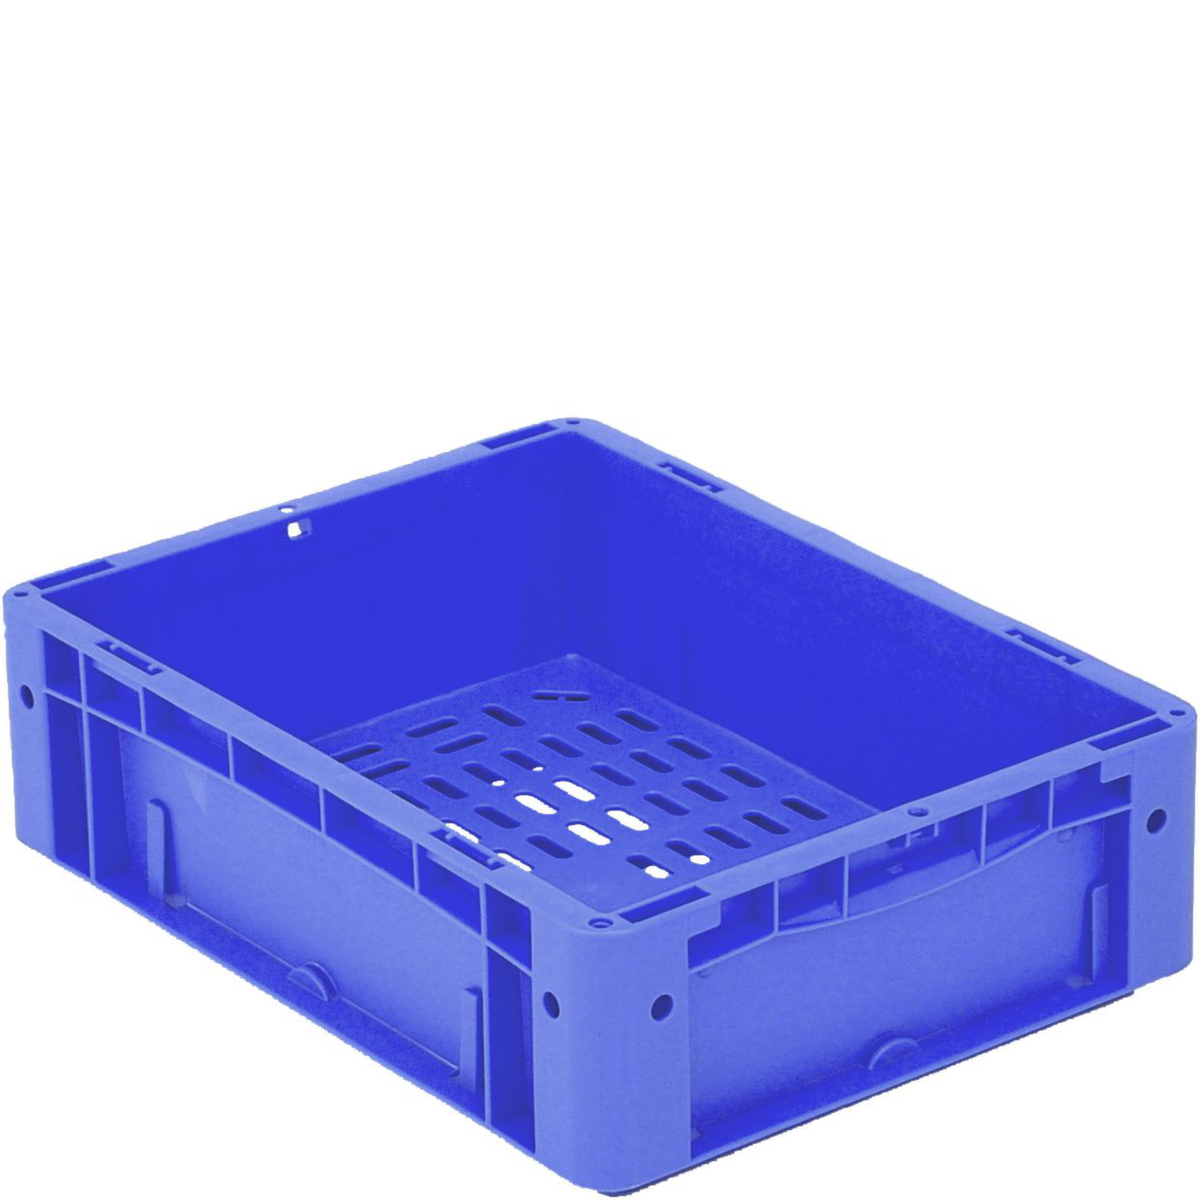 Euronorm stapelcontainers Ergonomic met geperforeerde bodem, blauw, inhoud 9,8 l  ZOOM